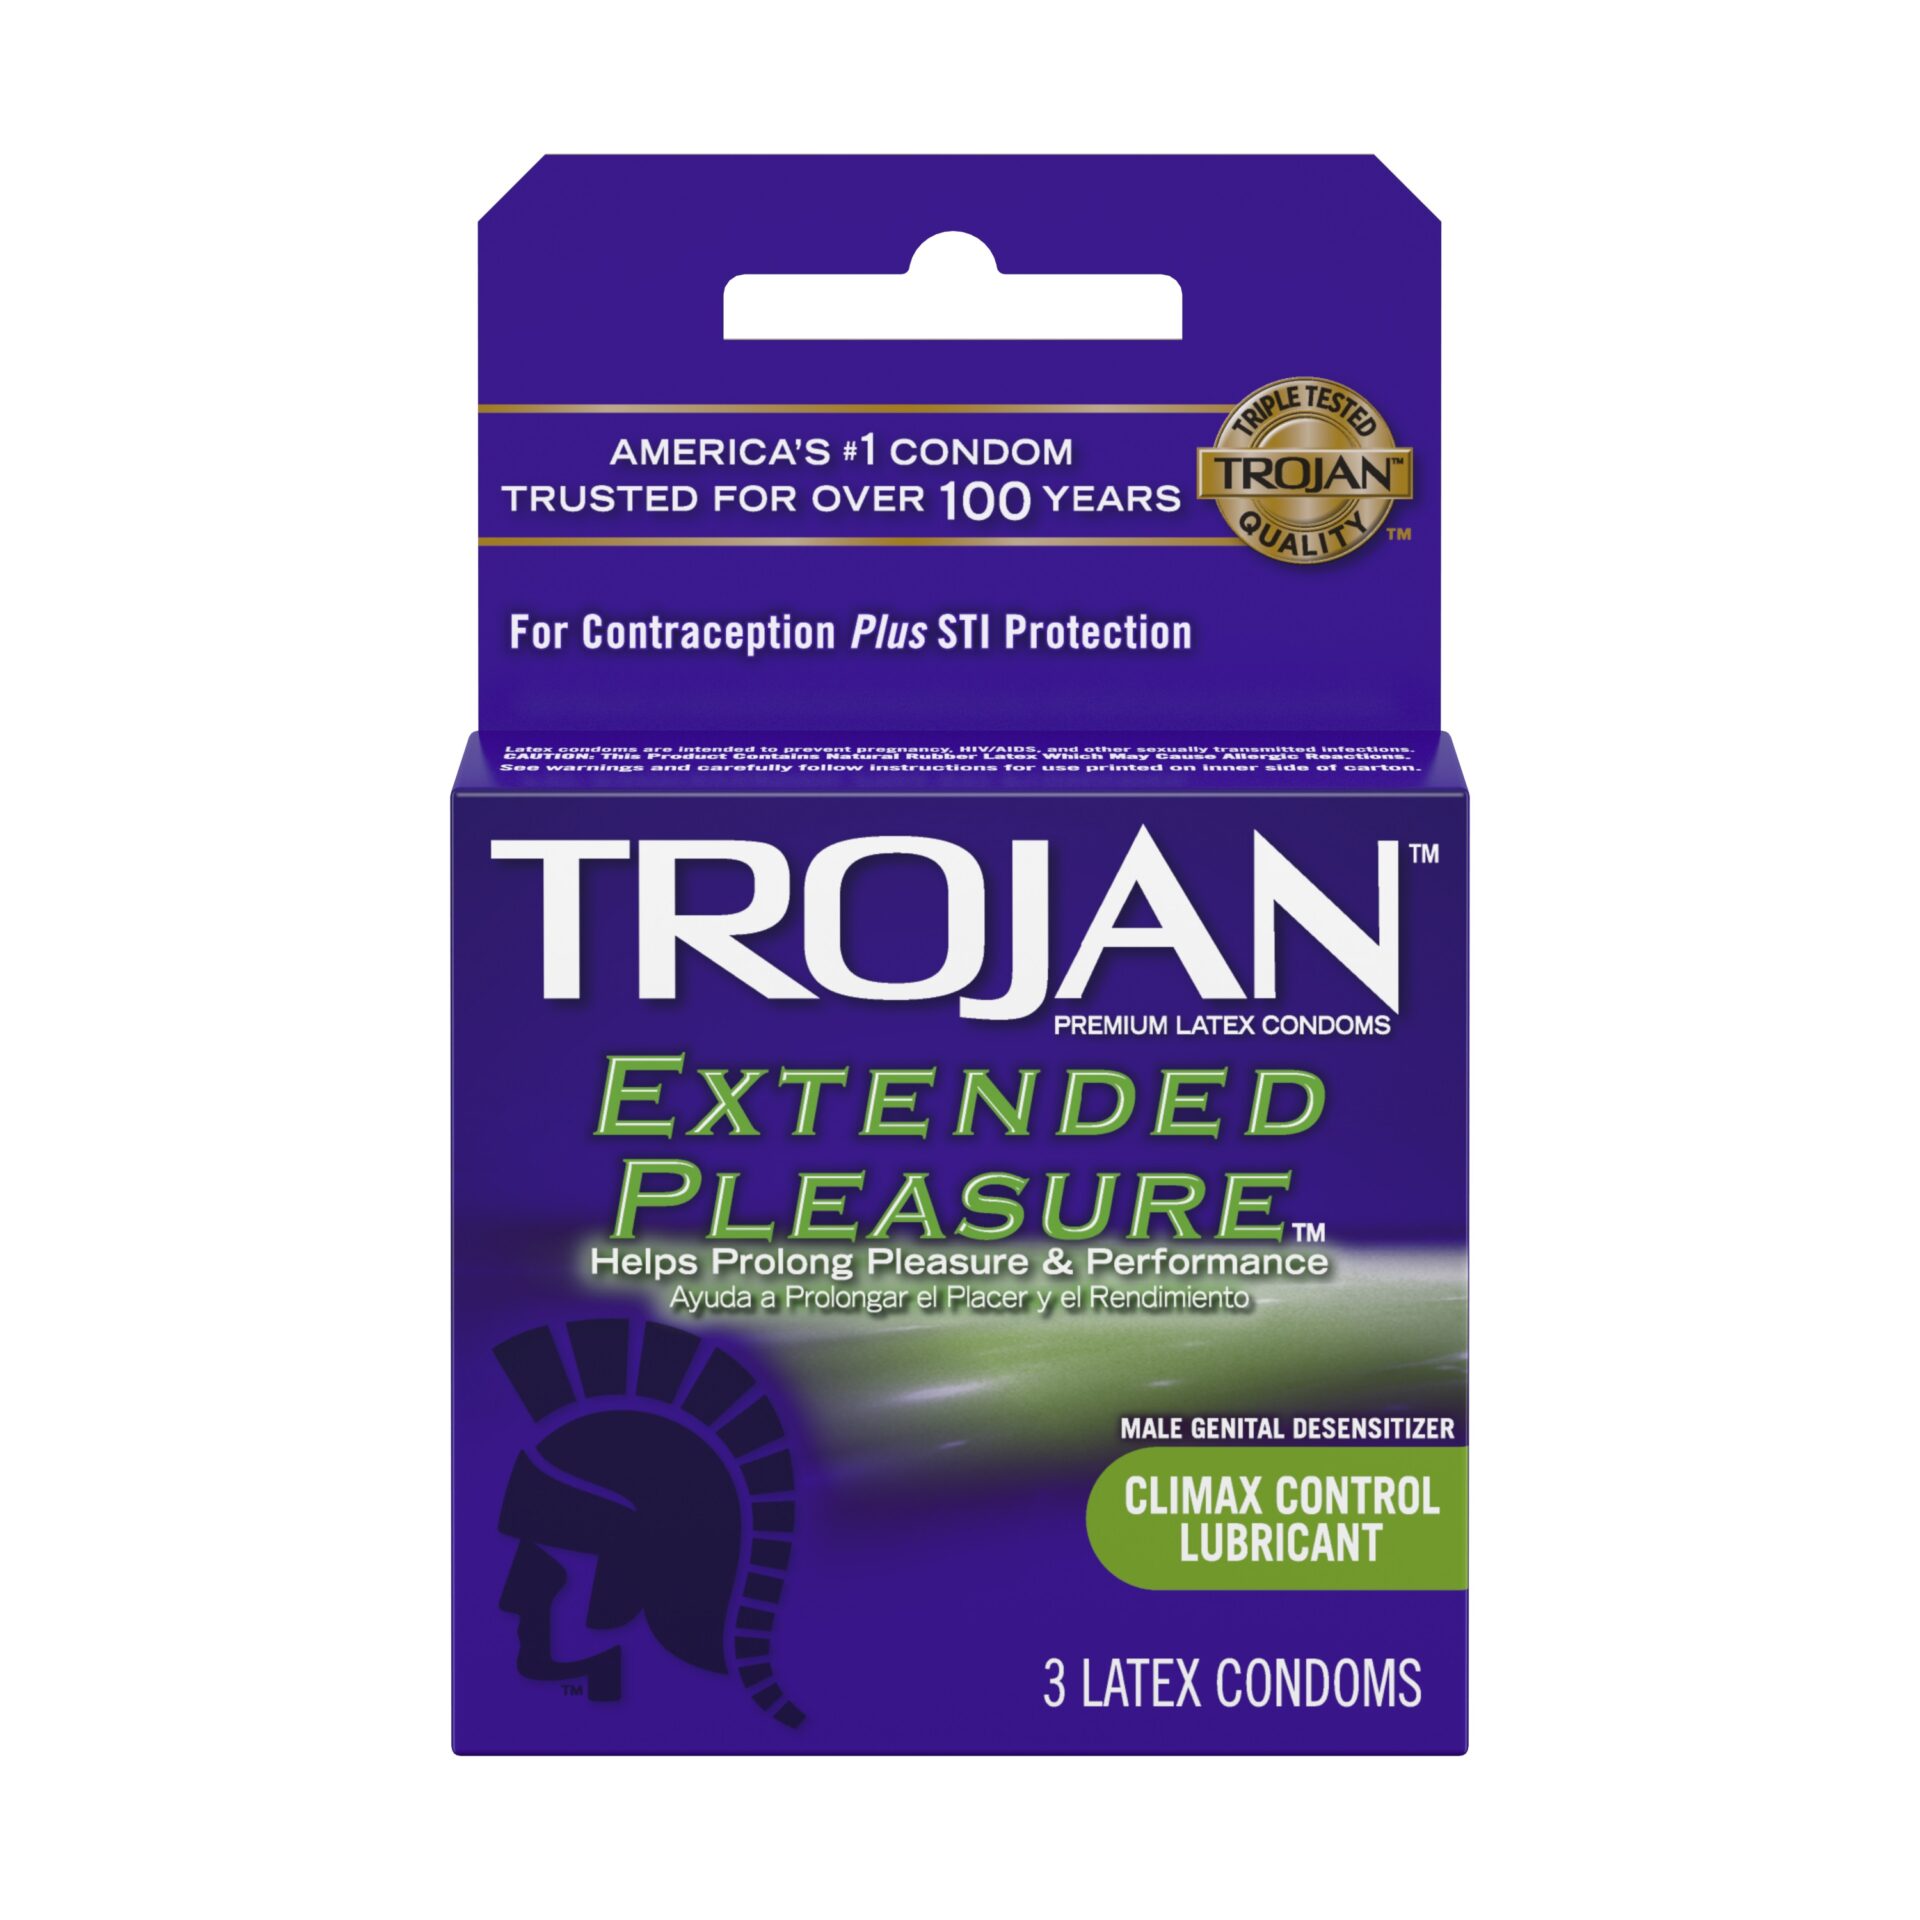 Trojan Extended pack